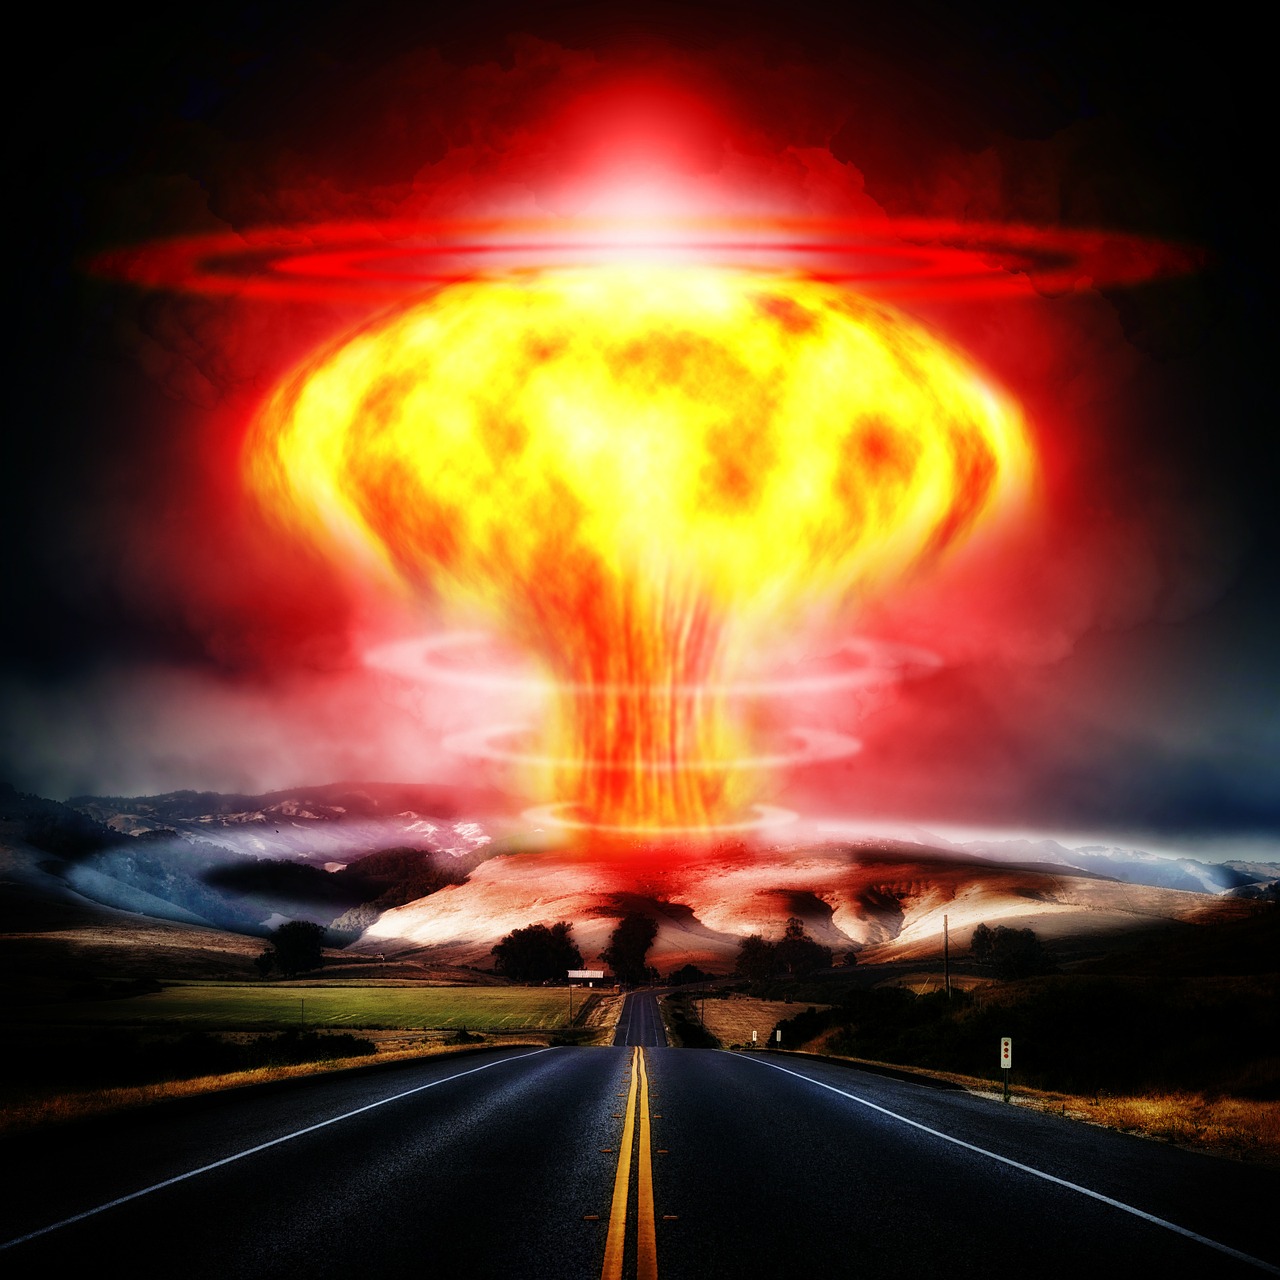 nuclear-explosion-356108_1280.jpg